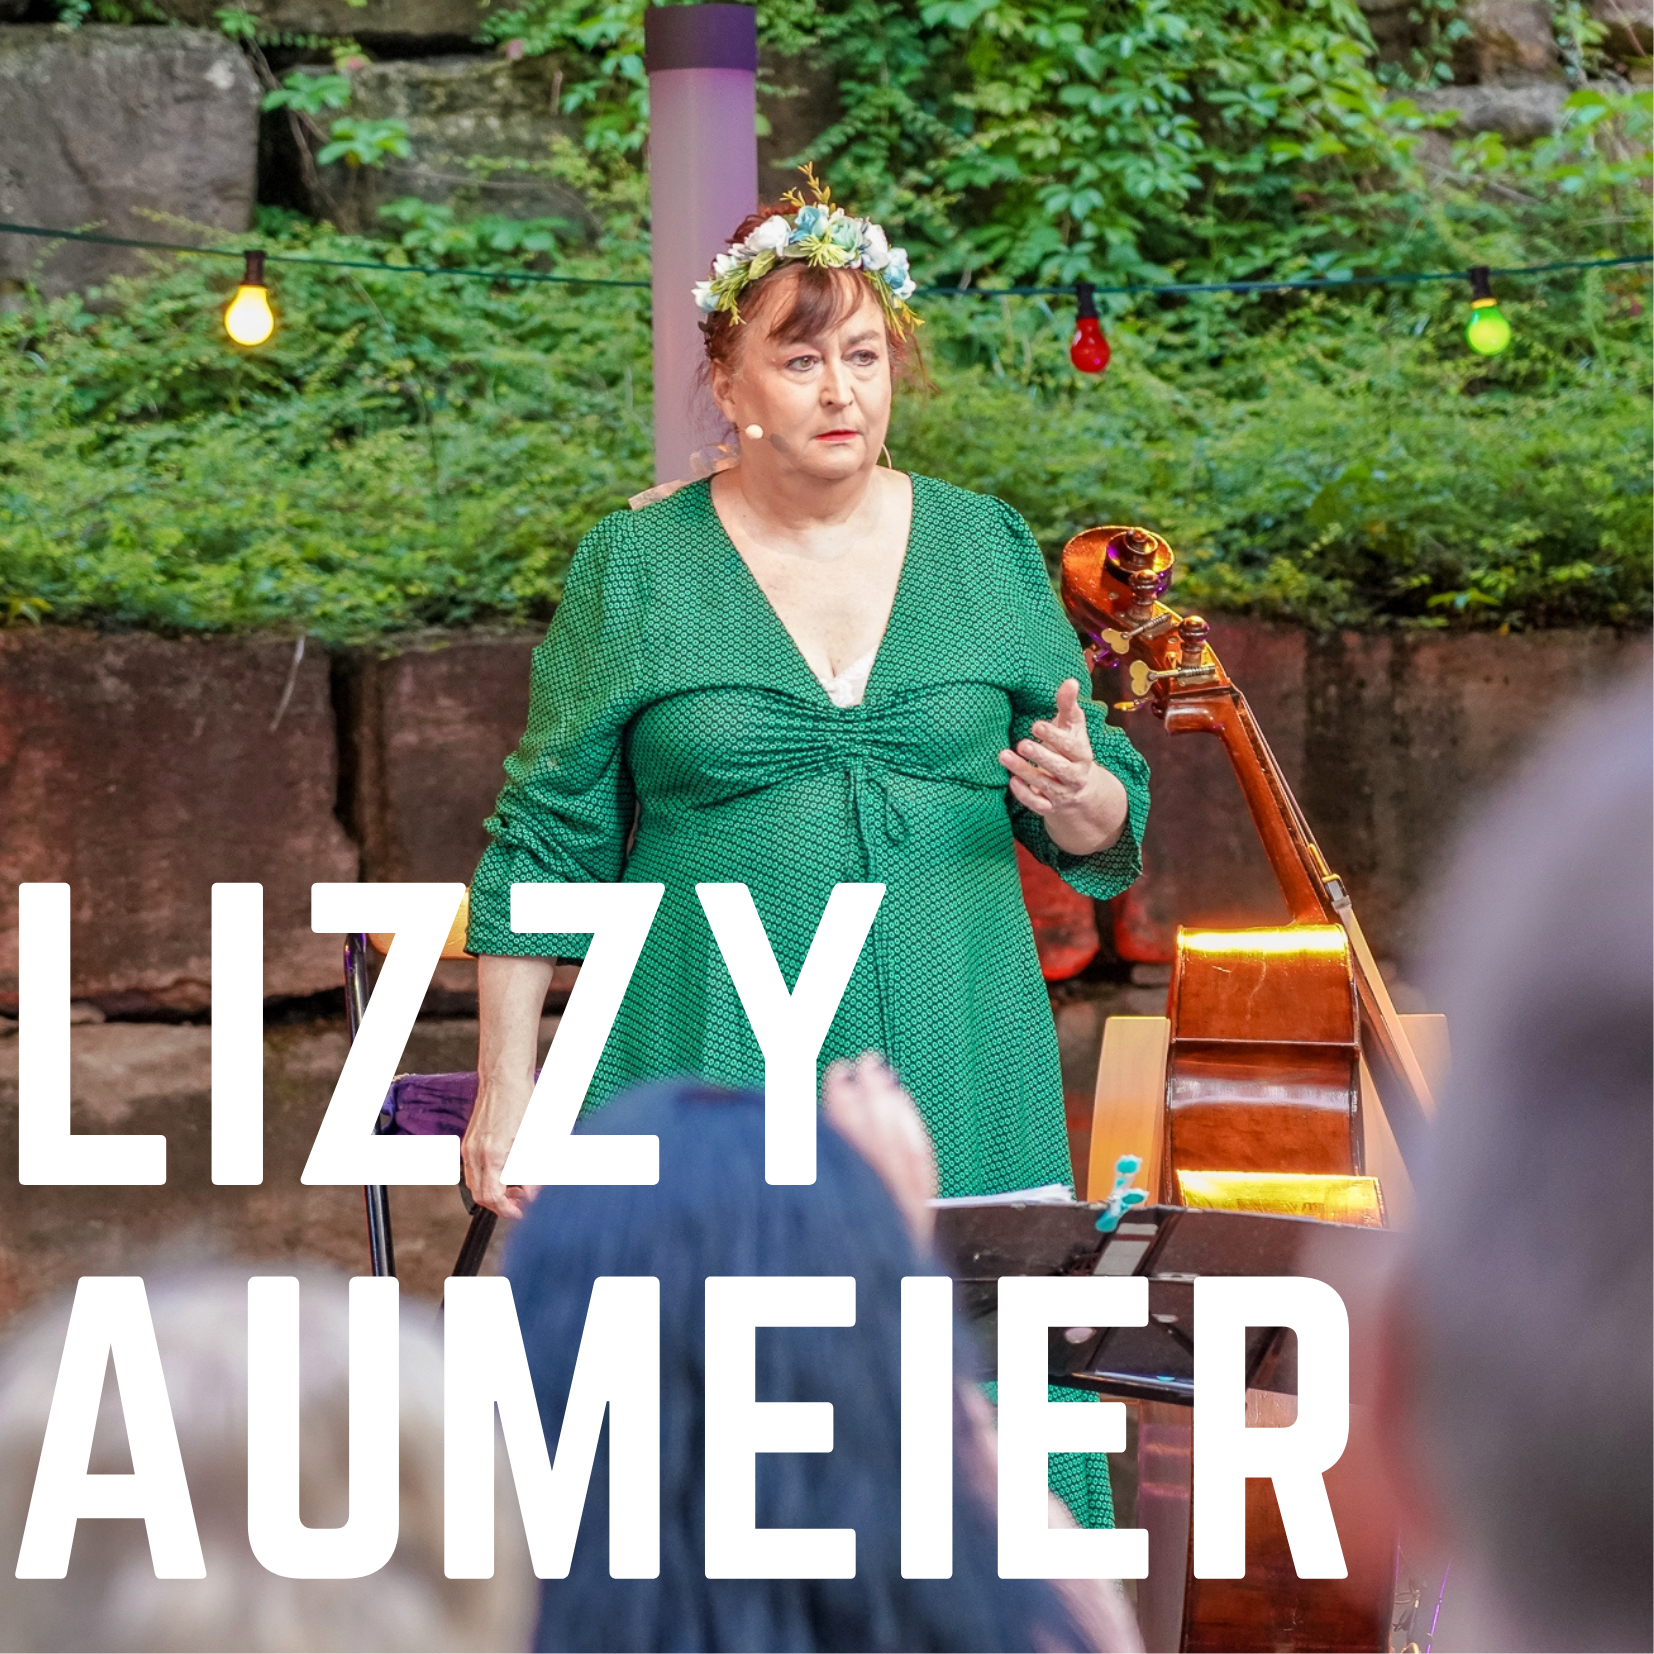 Bild vergrößern: Der Name der Knstlerin "Lizzy Auermeier" ist in weien Blockbuchstaben auf dem Foto zu sehen. Im Hintergrund ist die Kabarettistin Lizyy Aumeier auf der Open-Air Bhne des Kultursommer 2021 zu sehen.